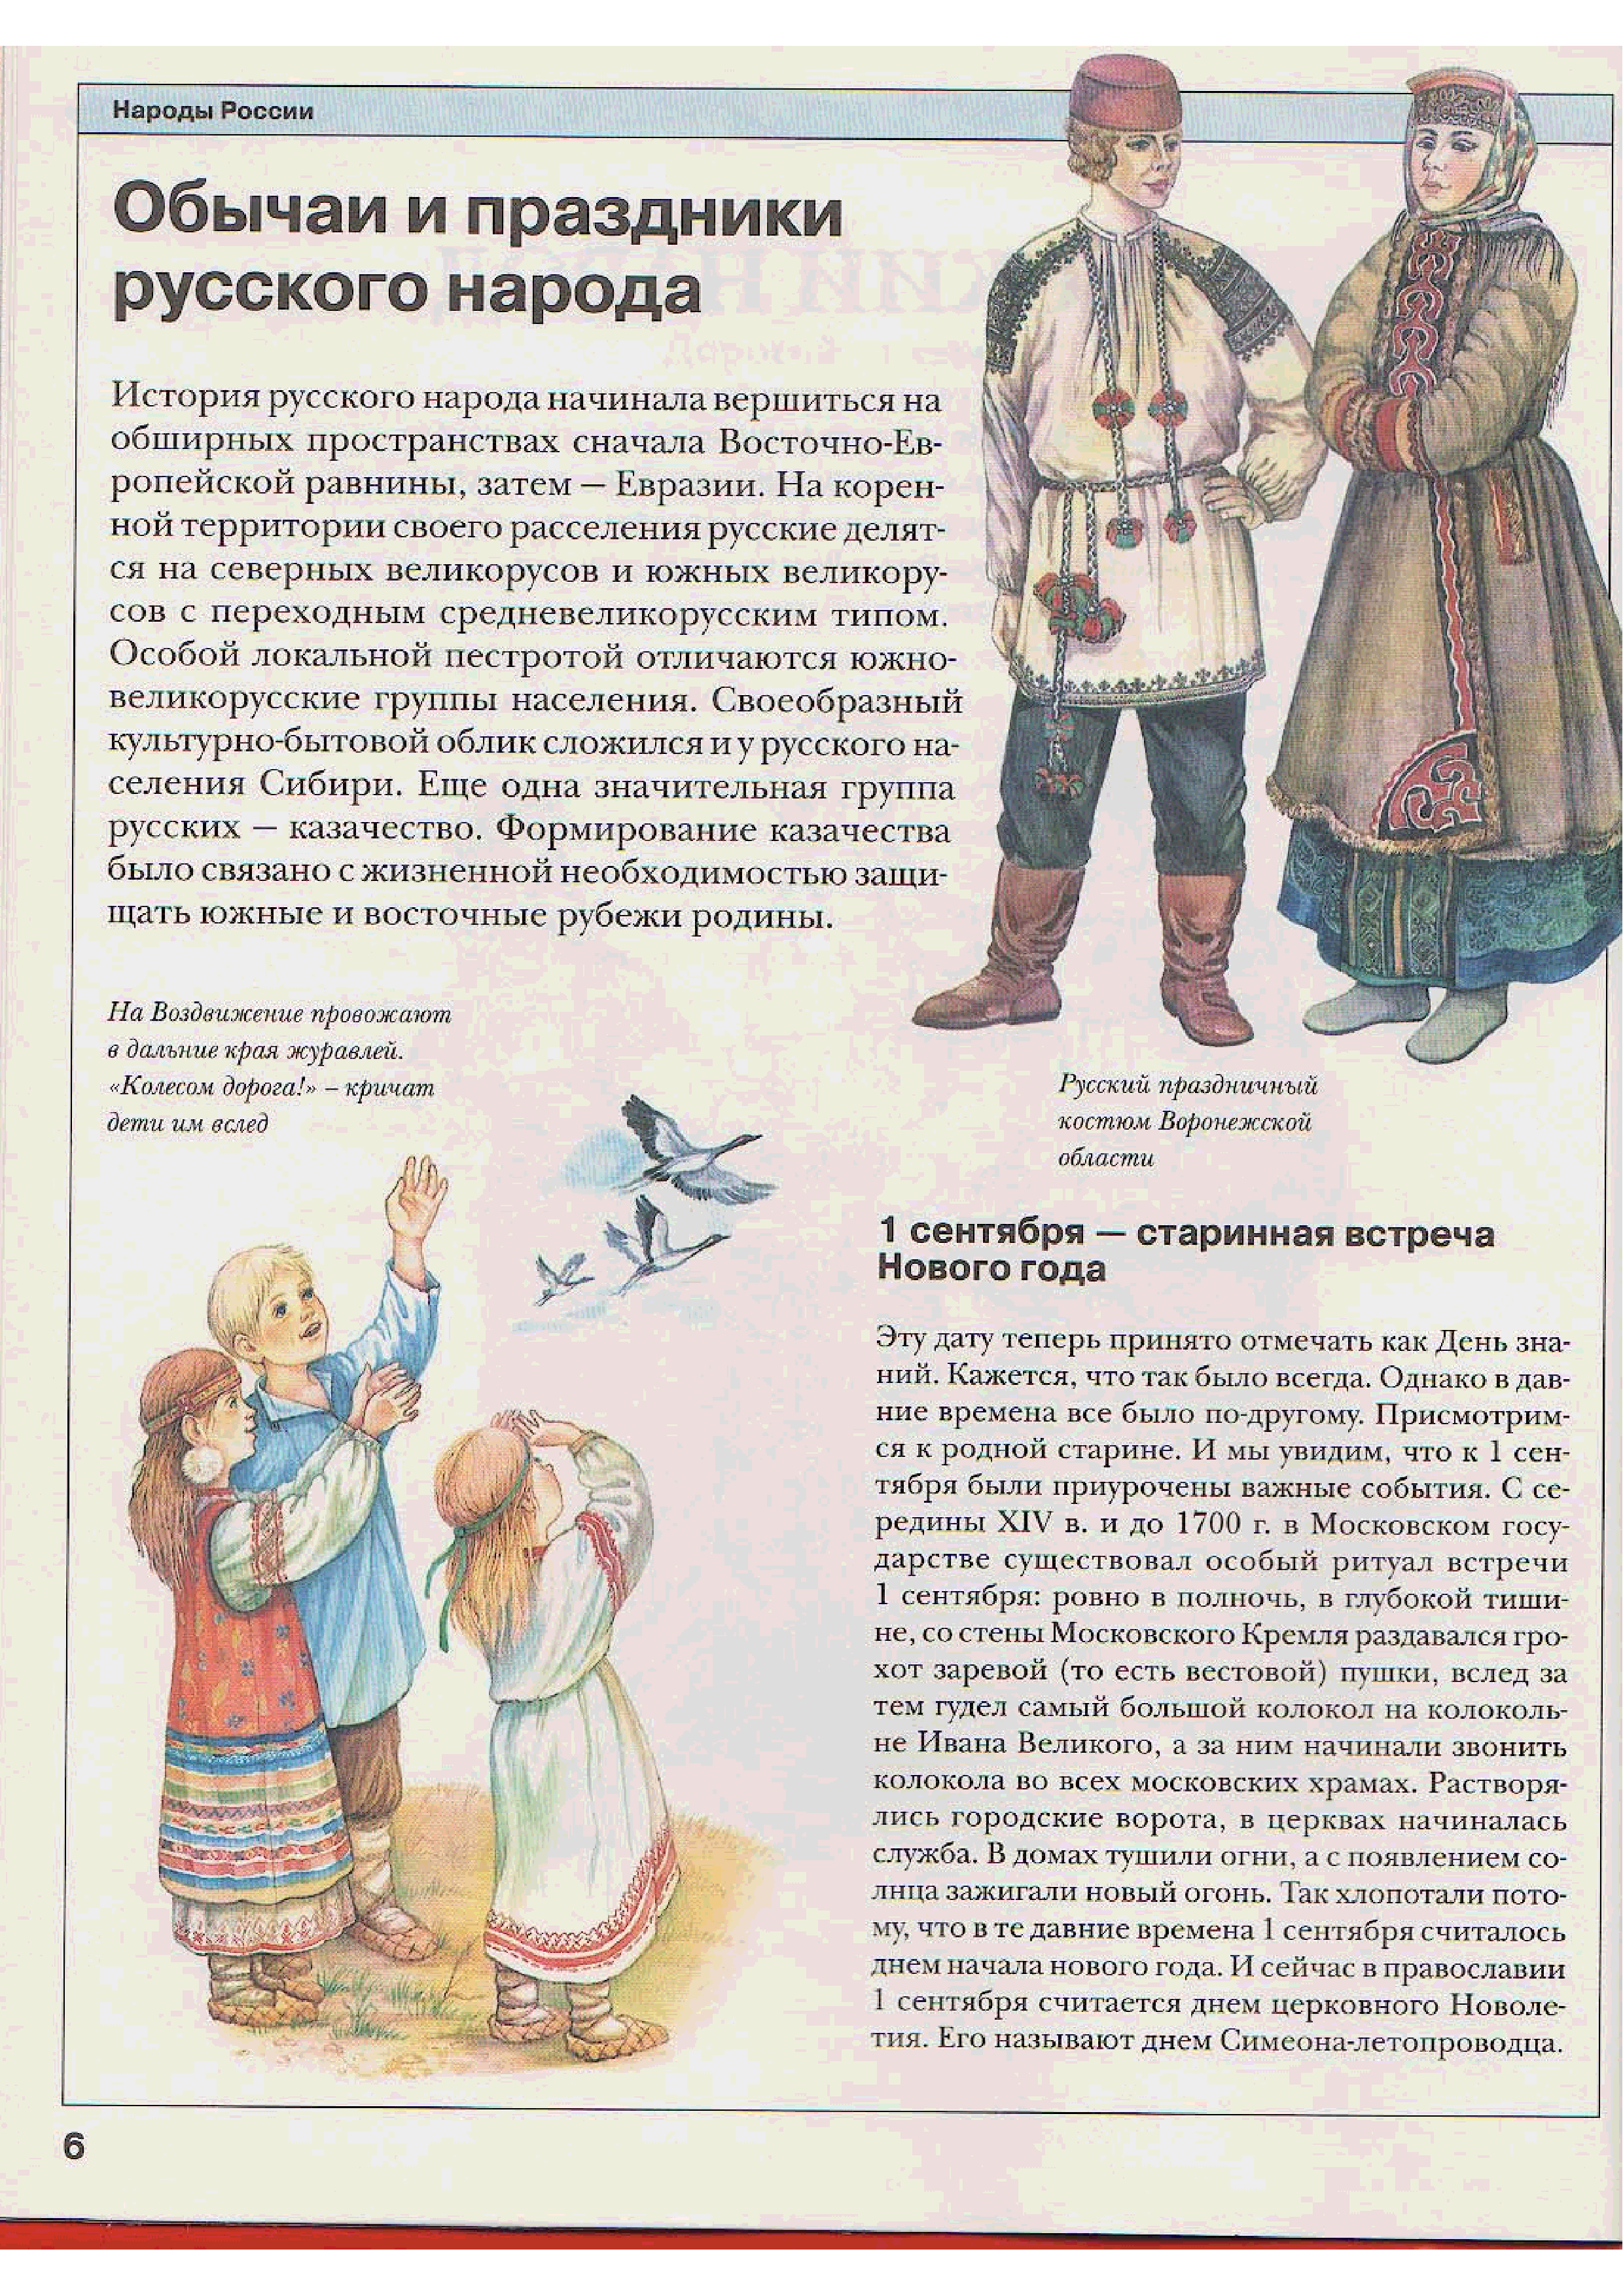 Цветкова народы россии читать